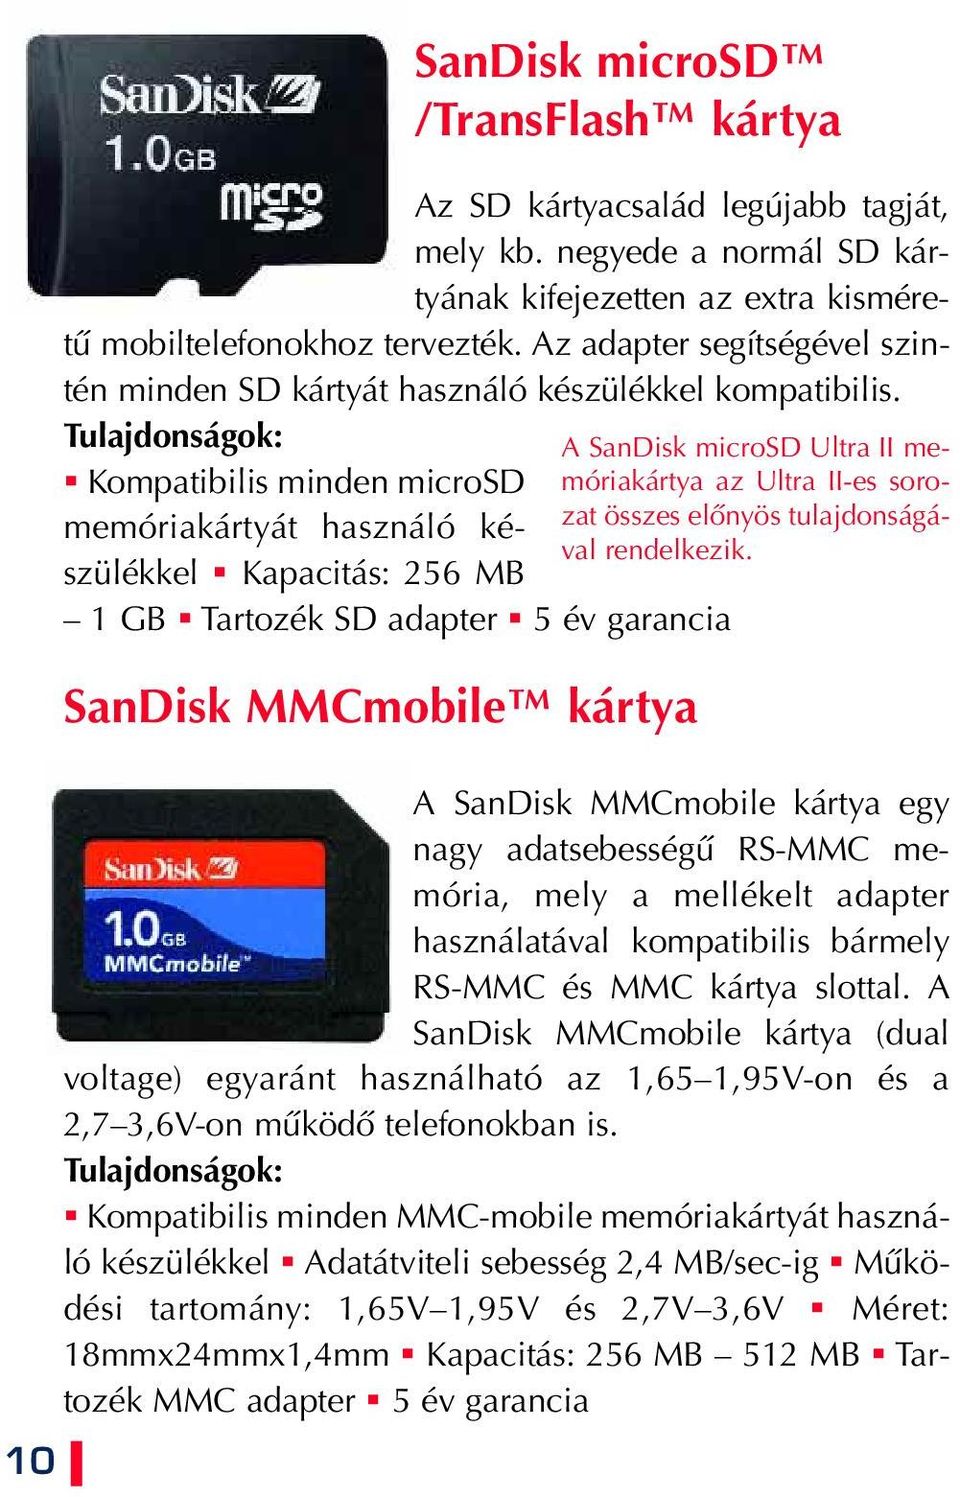 Tulajdonságok: A SanDisk microsd Ultra II memóriakártya az Ultra II-es soro- Kompatibilis minden microsd memóriakártyát használó készülékkel Kapacitás: 256 MB zat összes elônyös tulajdonságával